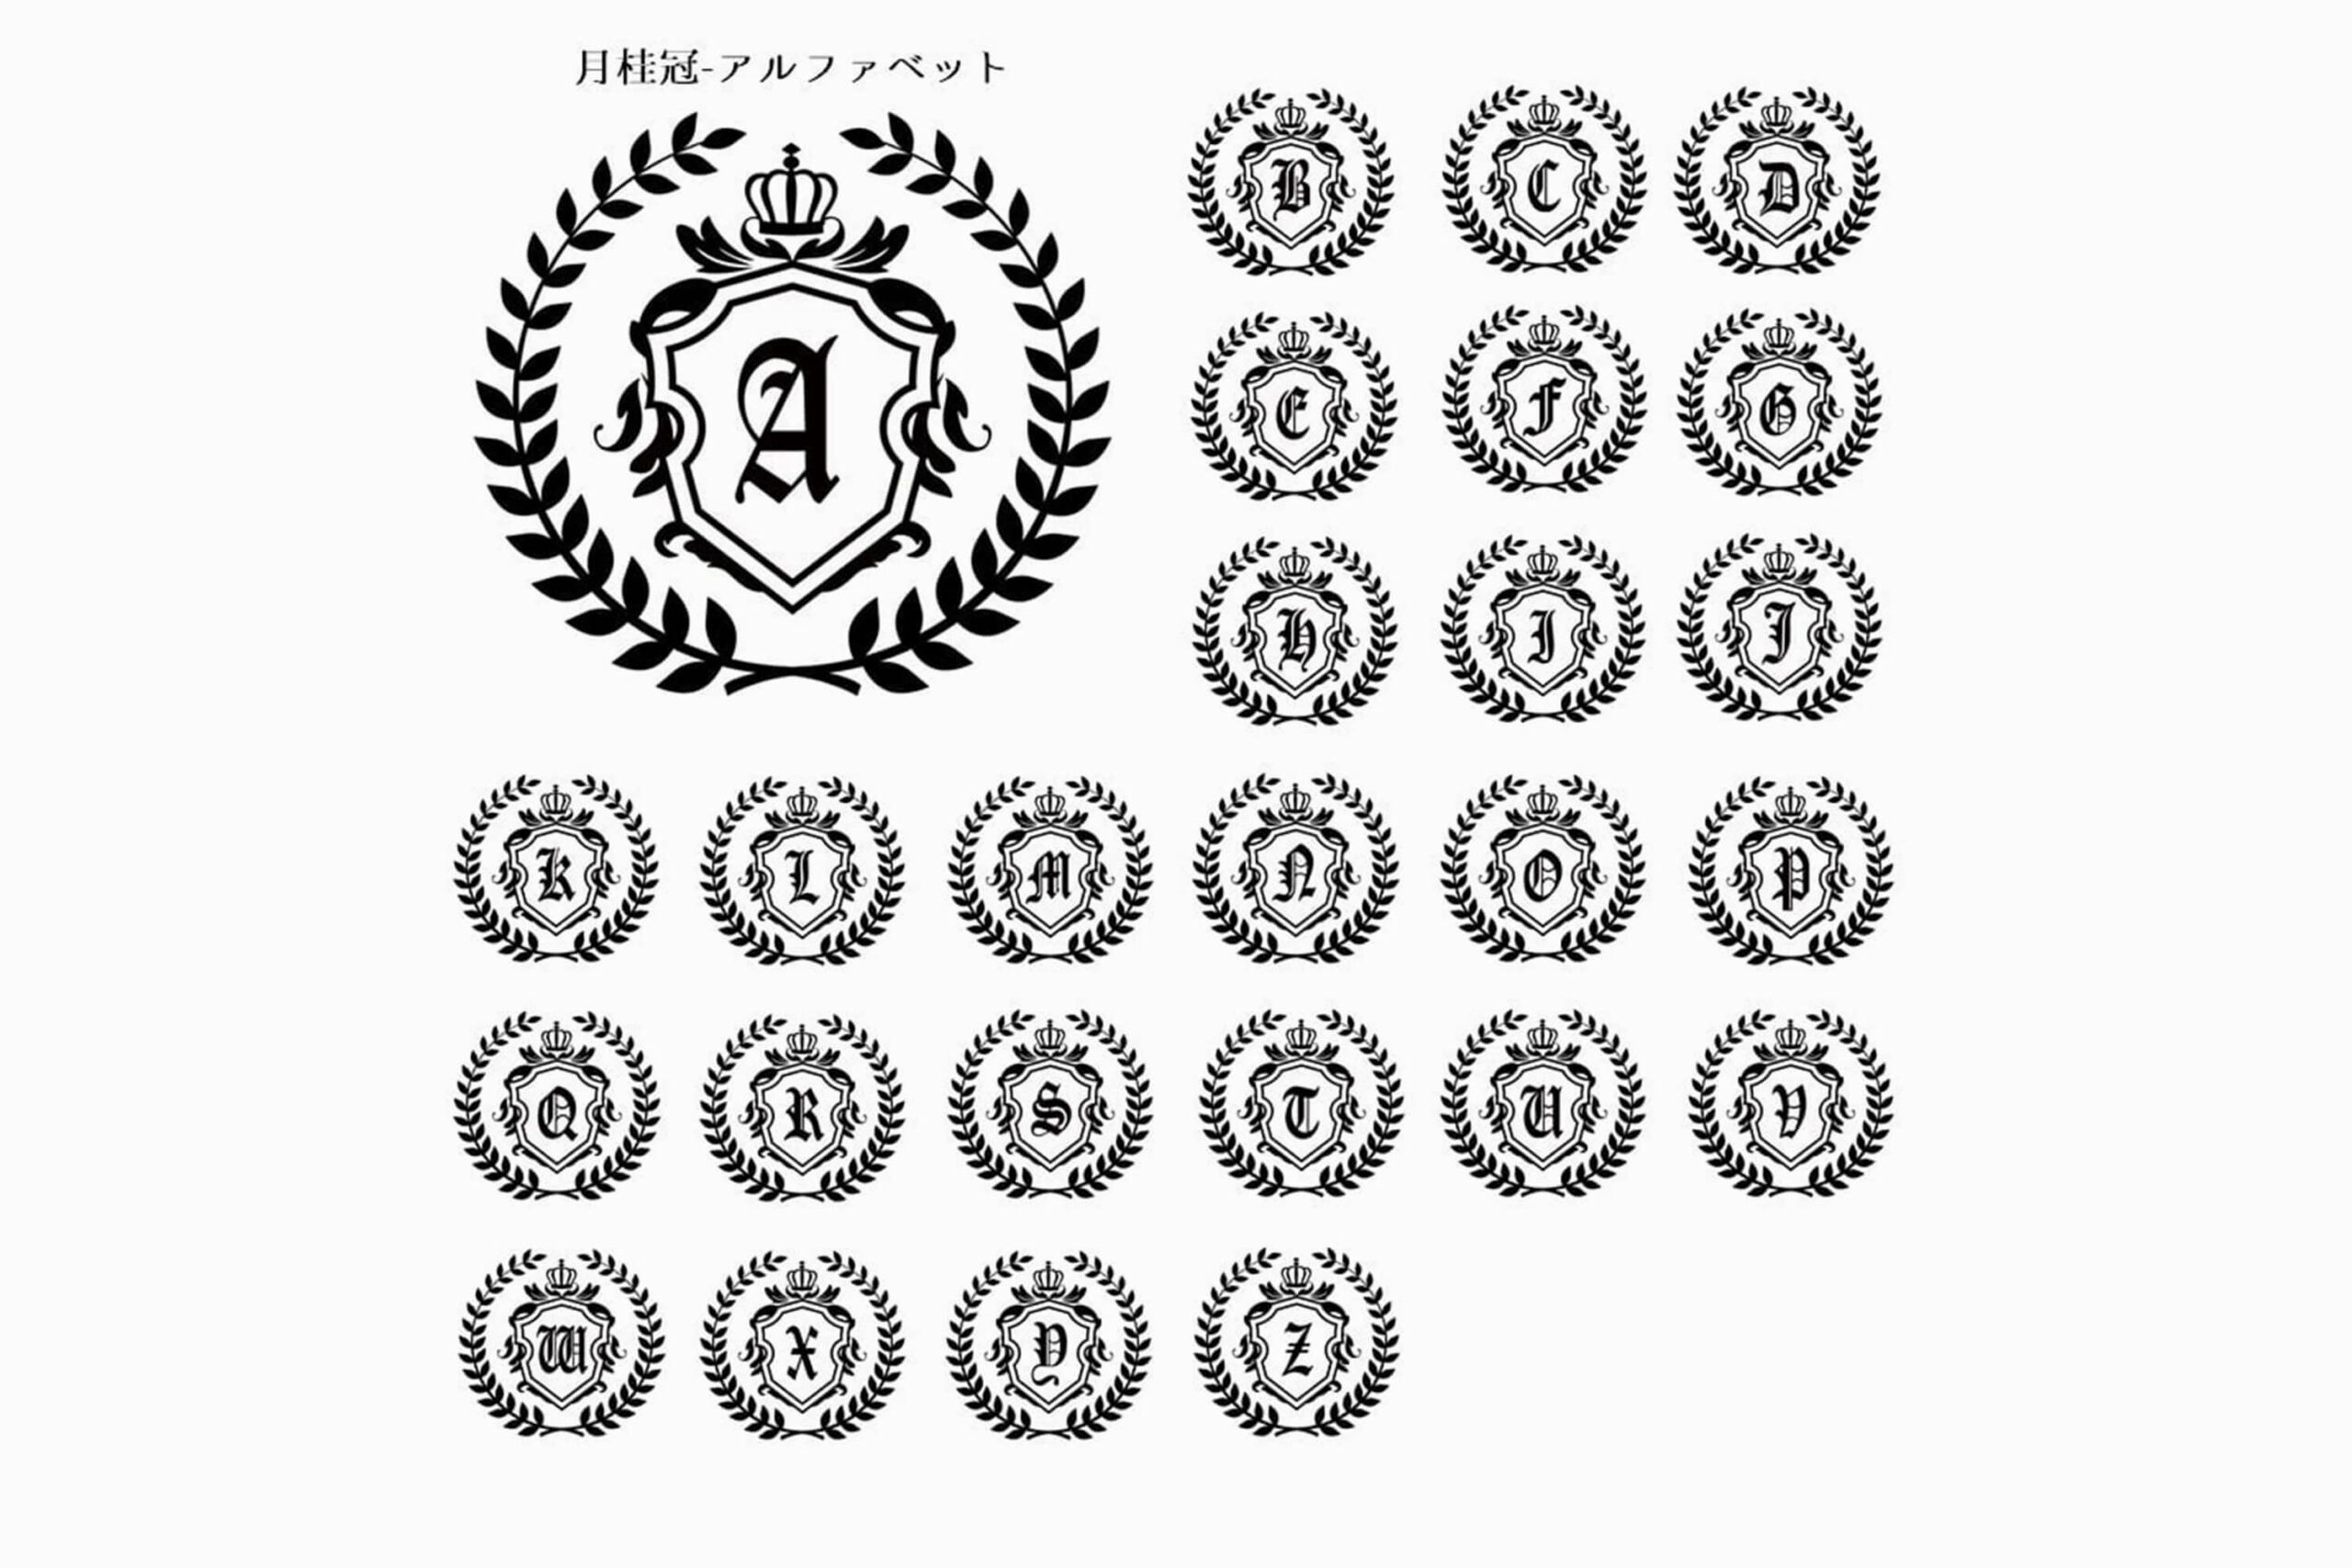 「アルファベット-月桂冠」の刻印デザイン